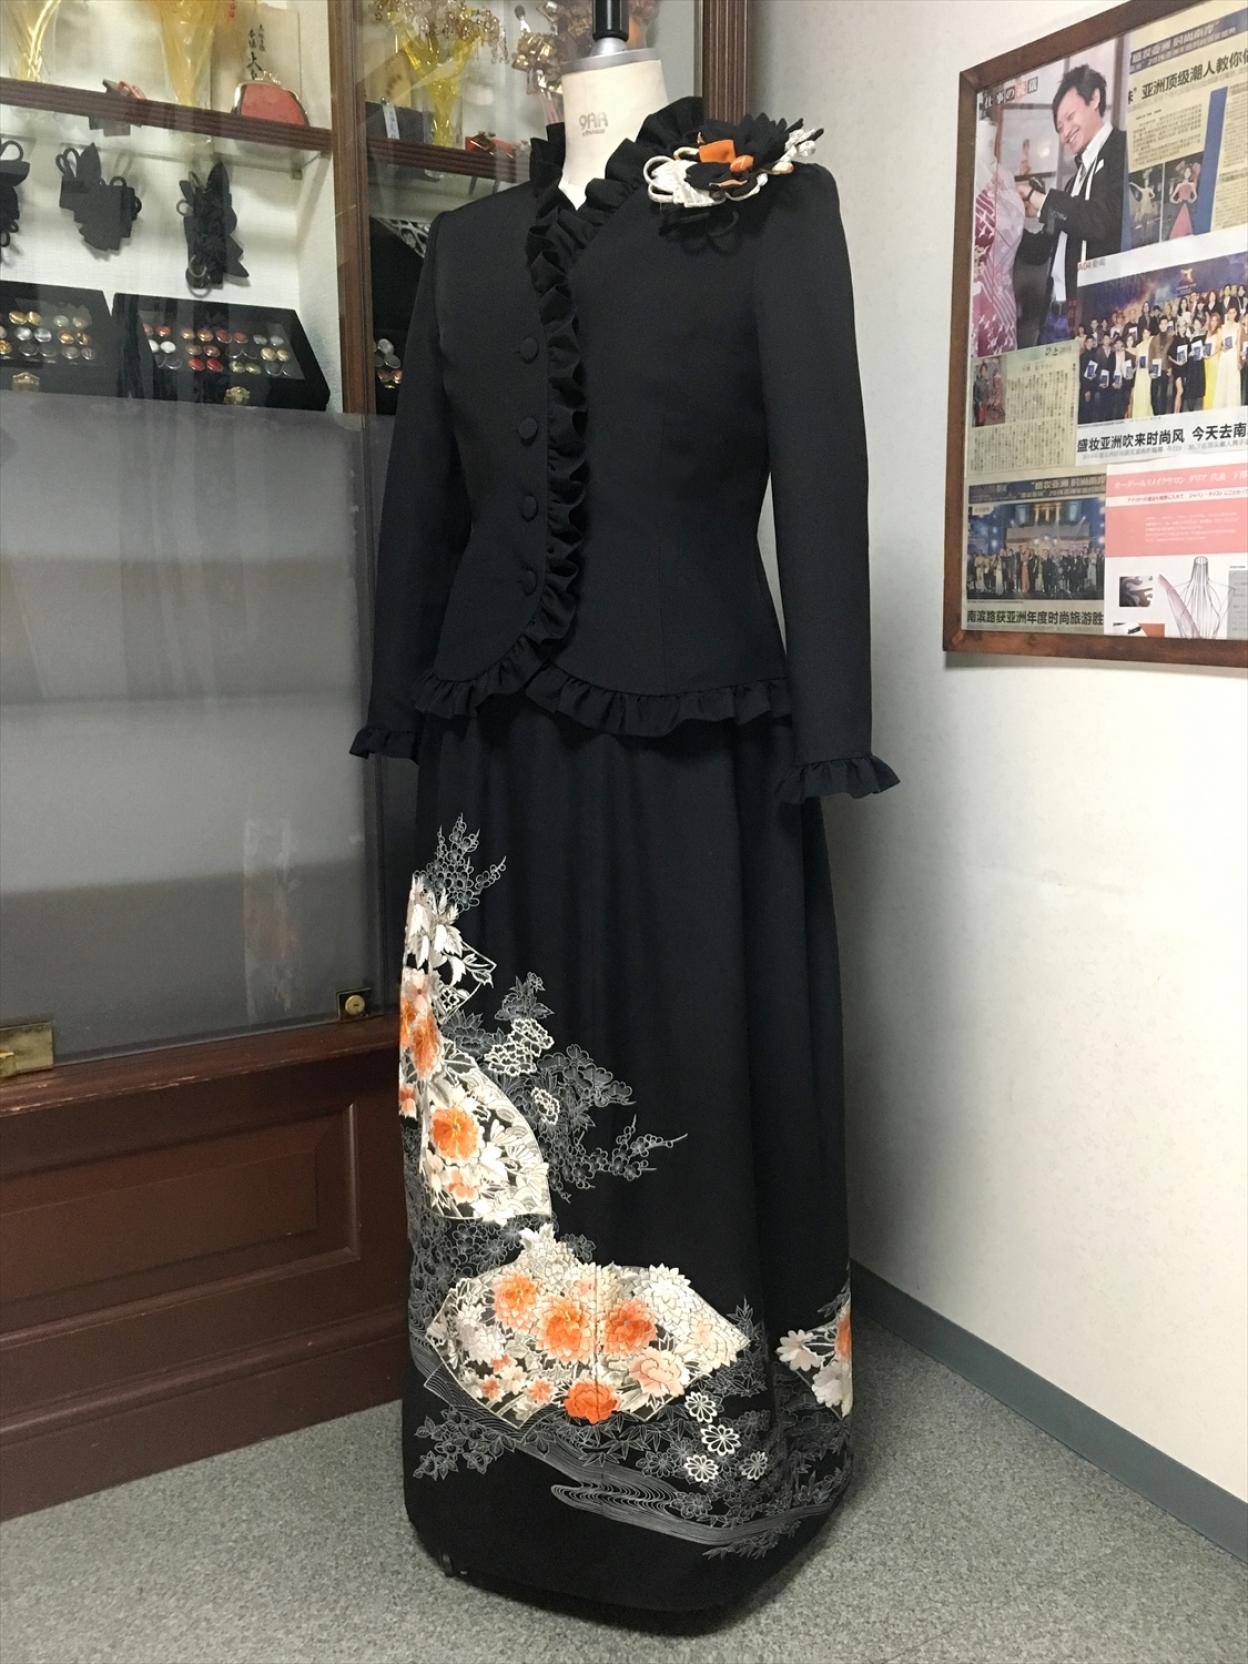 留袖ドレス 黒・橙 2ピース [花、扇] | 着物ドレス・留袖ドレス